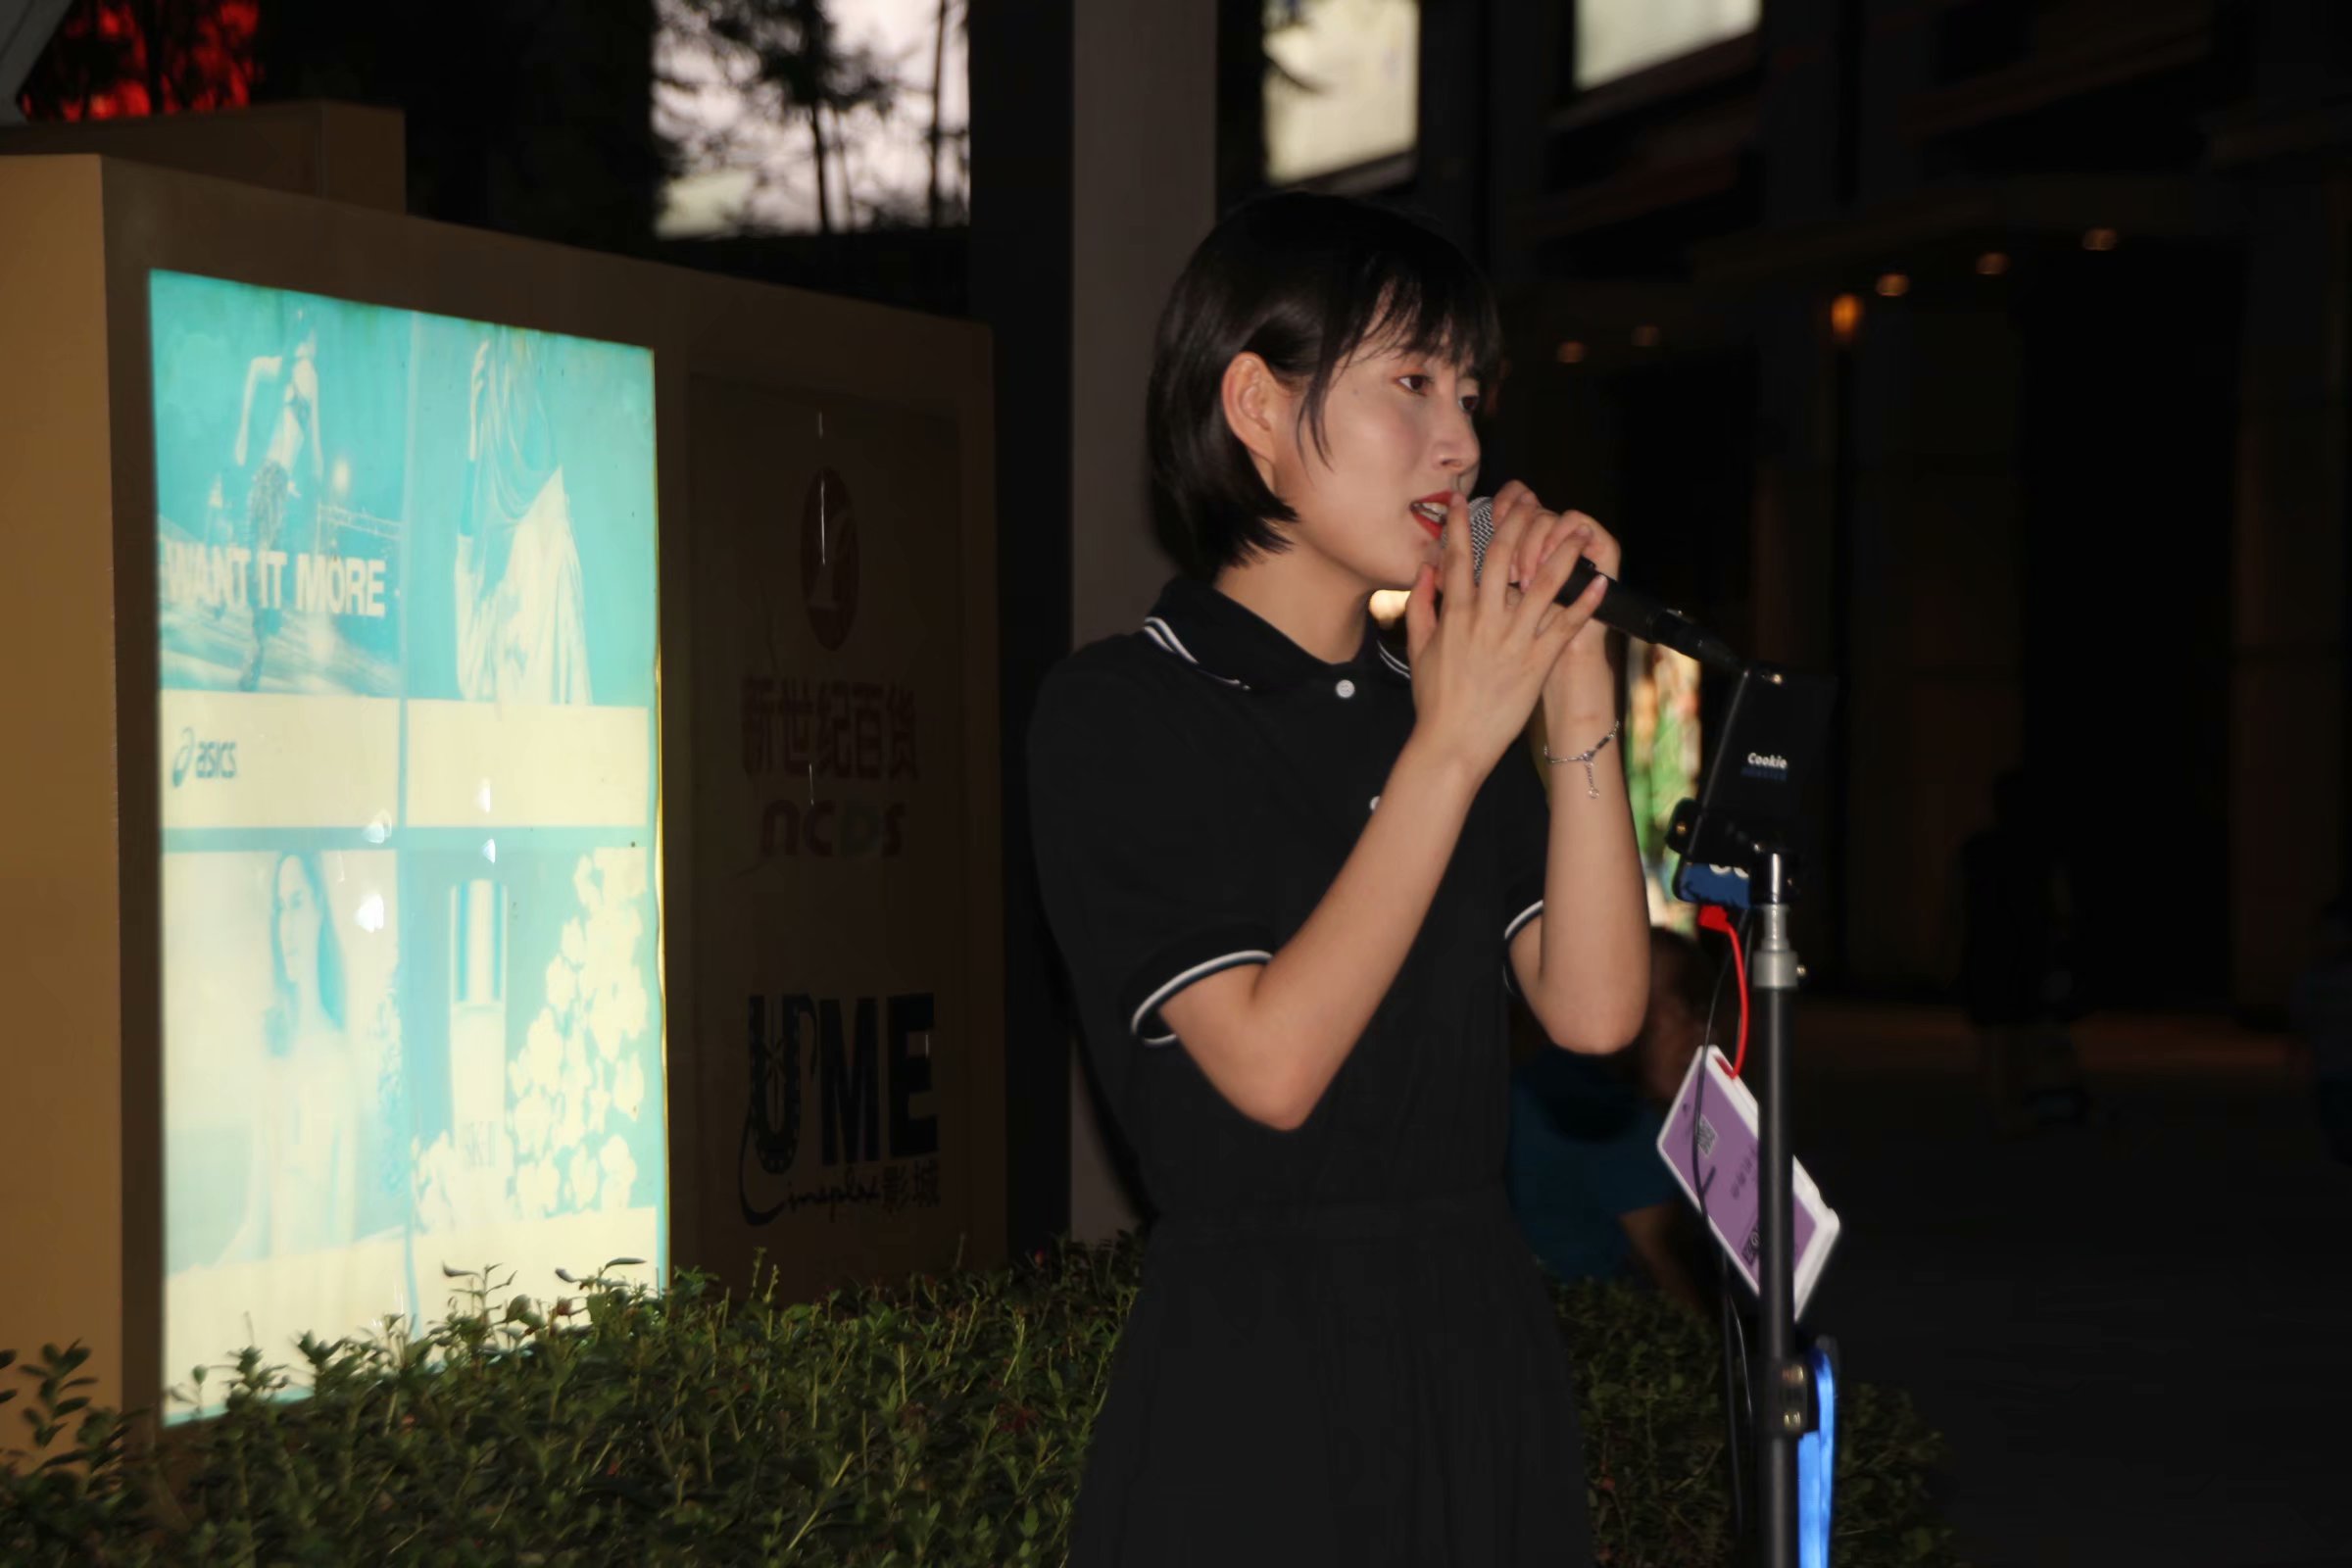 抖音网红女歌手现身重庆街头献唱卖艺全国巡演为贫困山区募捐